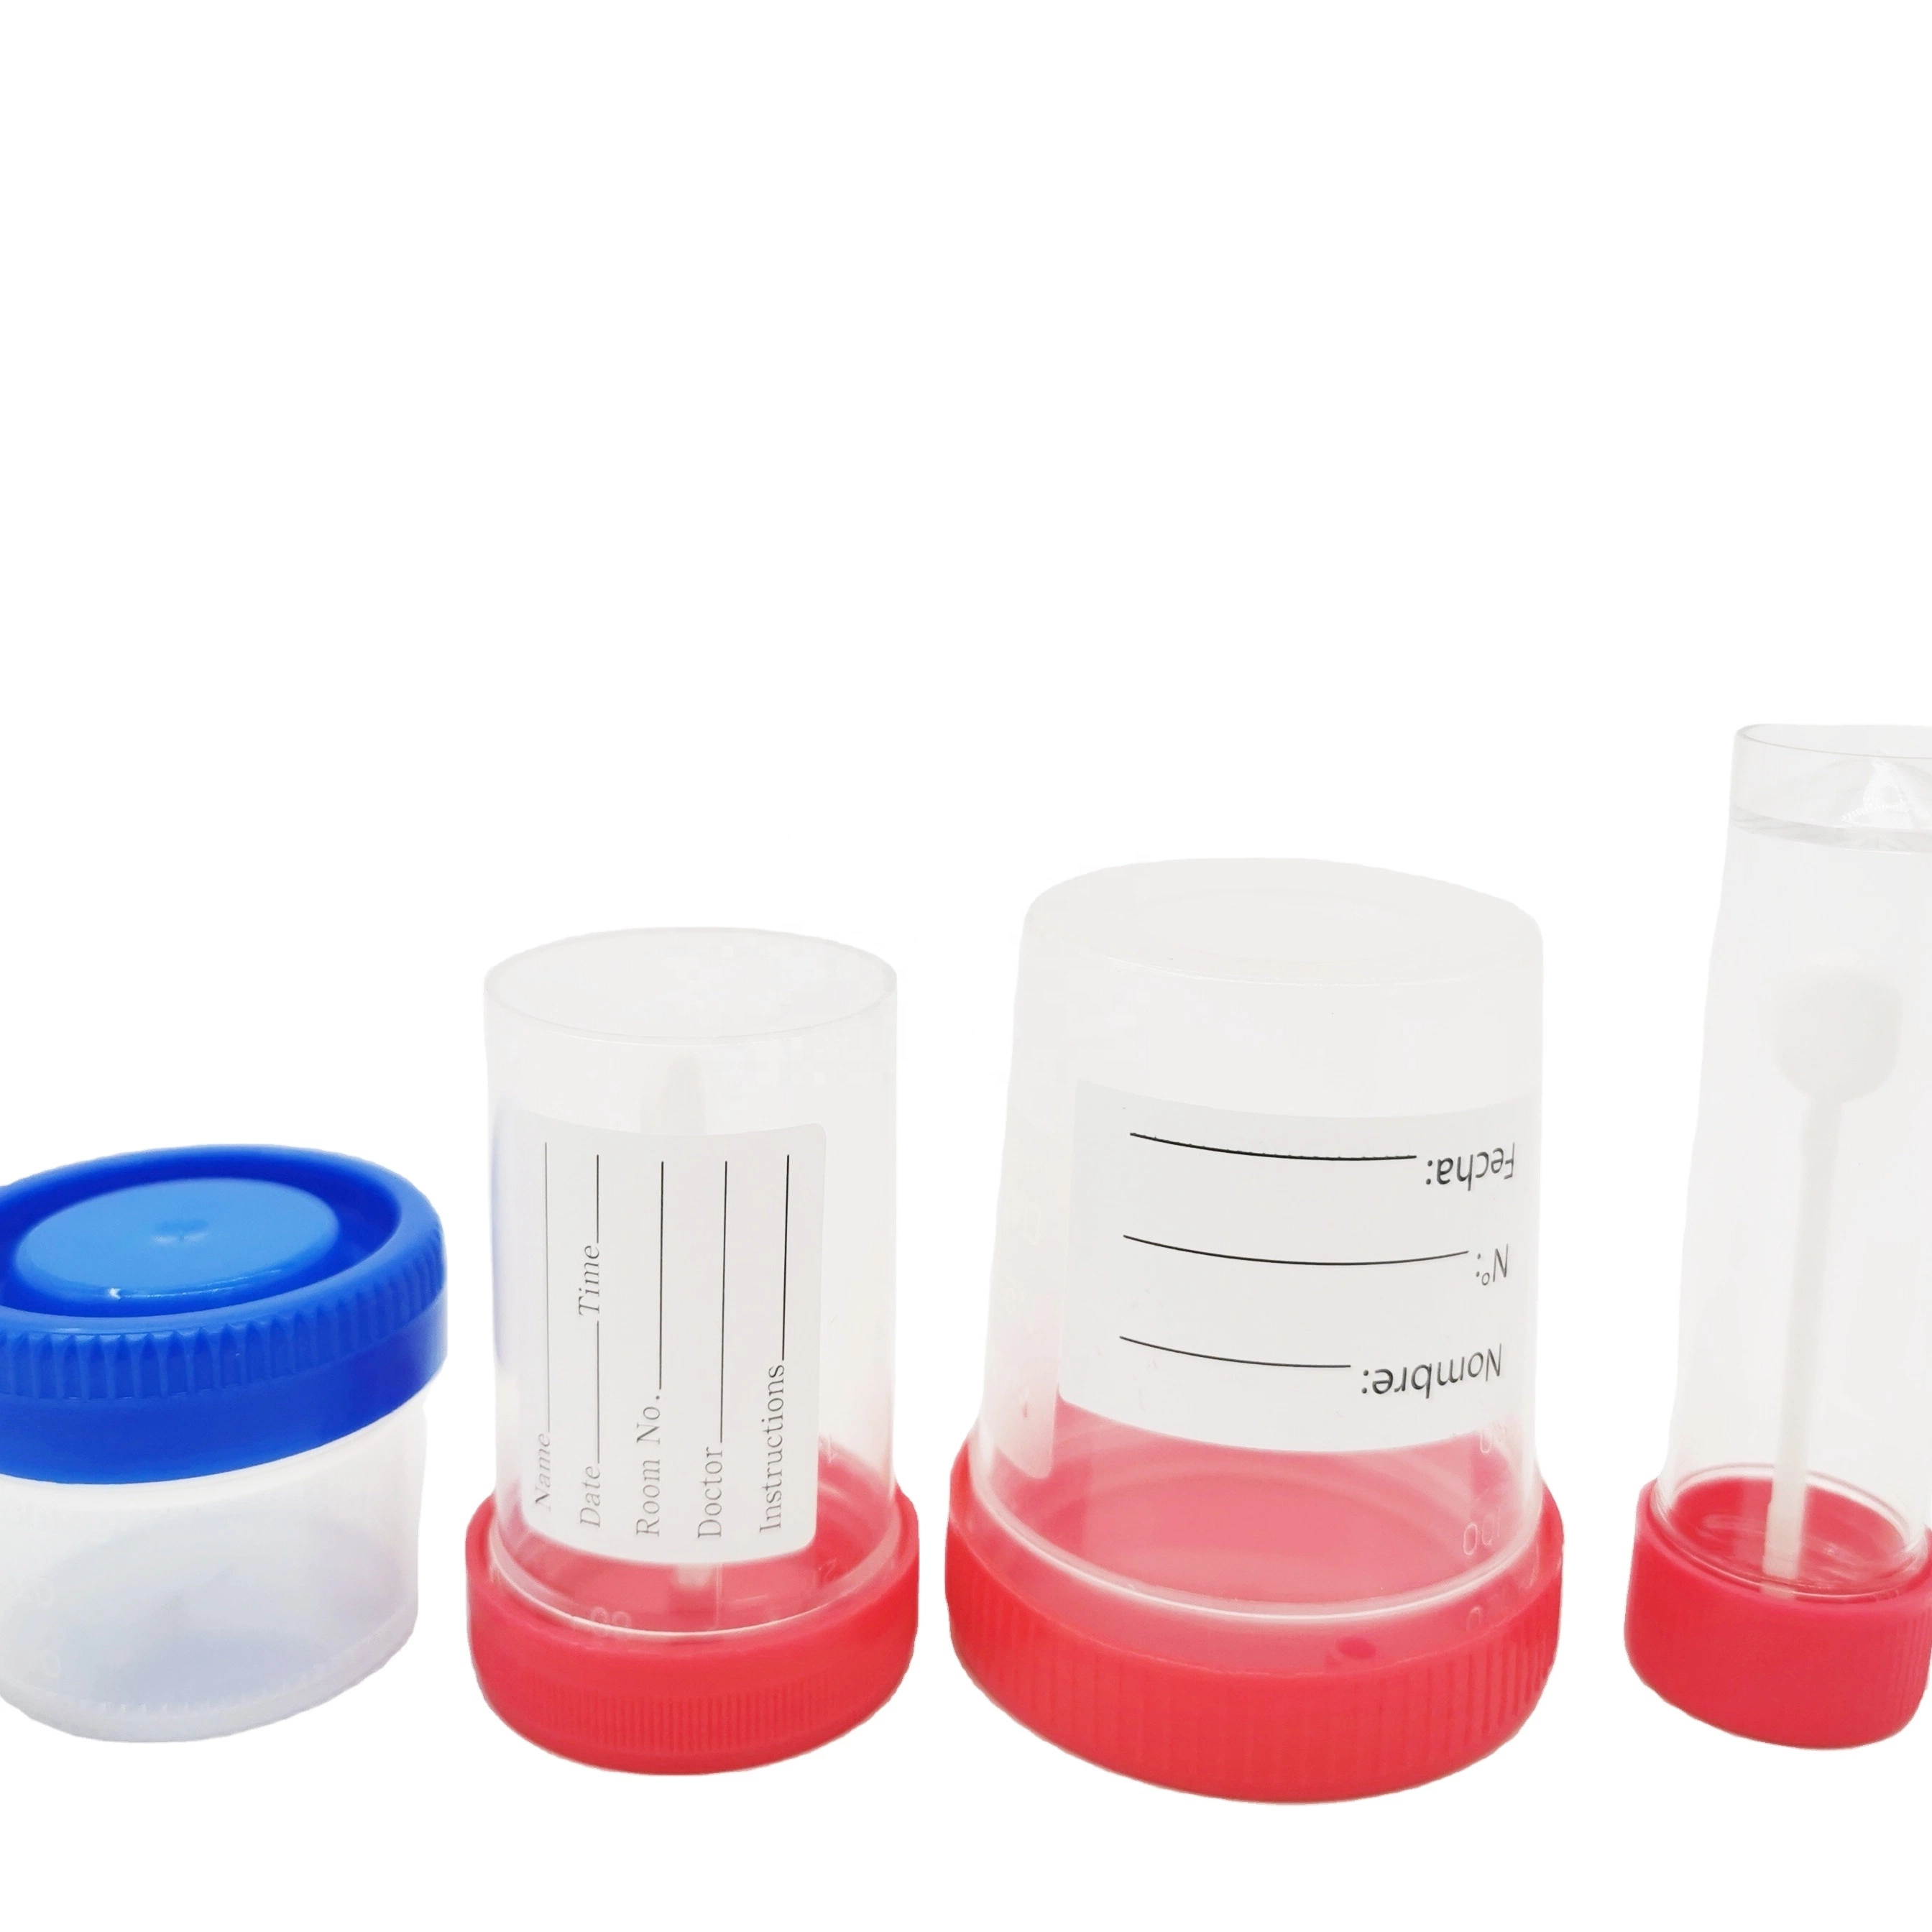 Teste de médicos com tampa roscada estéreis descartáveis de modelo de recipiente de coleta de urina para o Hospital